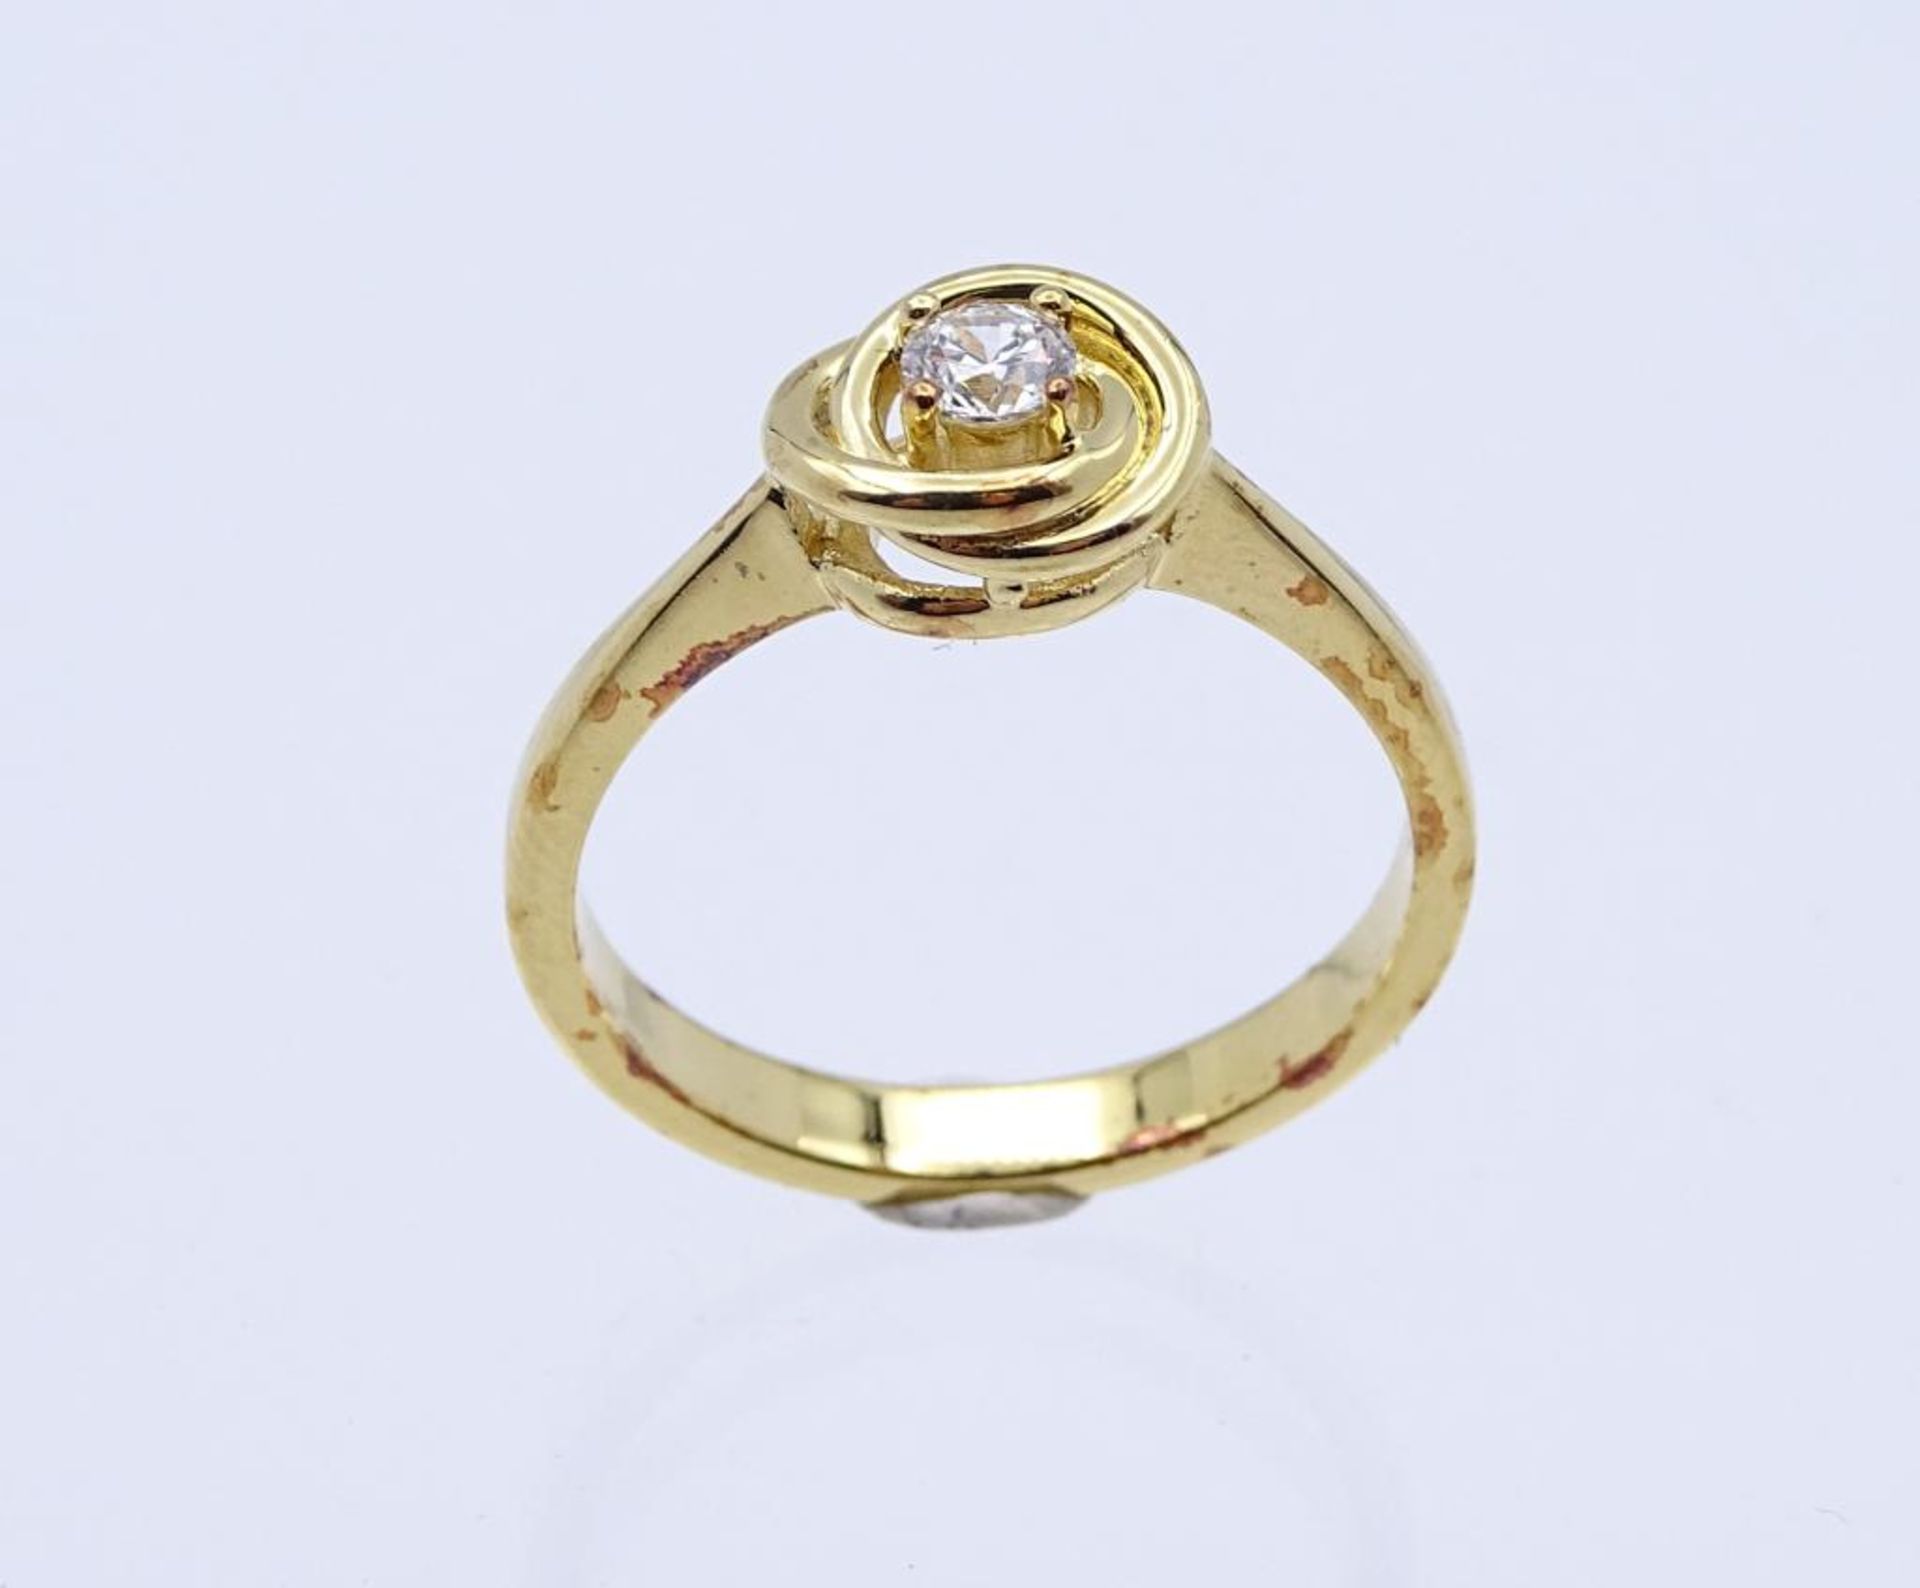 Edelstein-Ring Silber 925 vergoldet, mit einem rund fac. Weißen Edelstein 3,7 mm, RG 59, 3,6 - Image 2 of 3